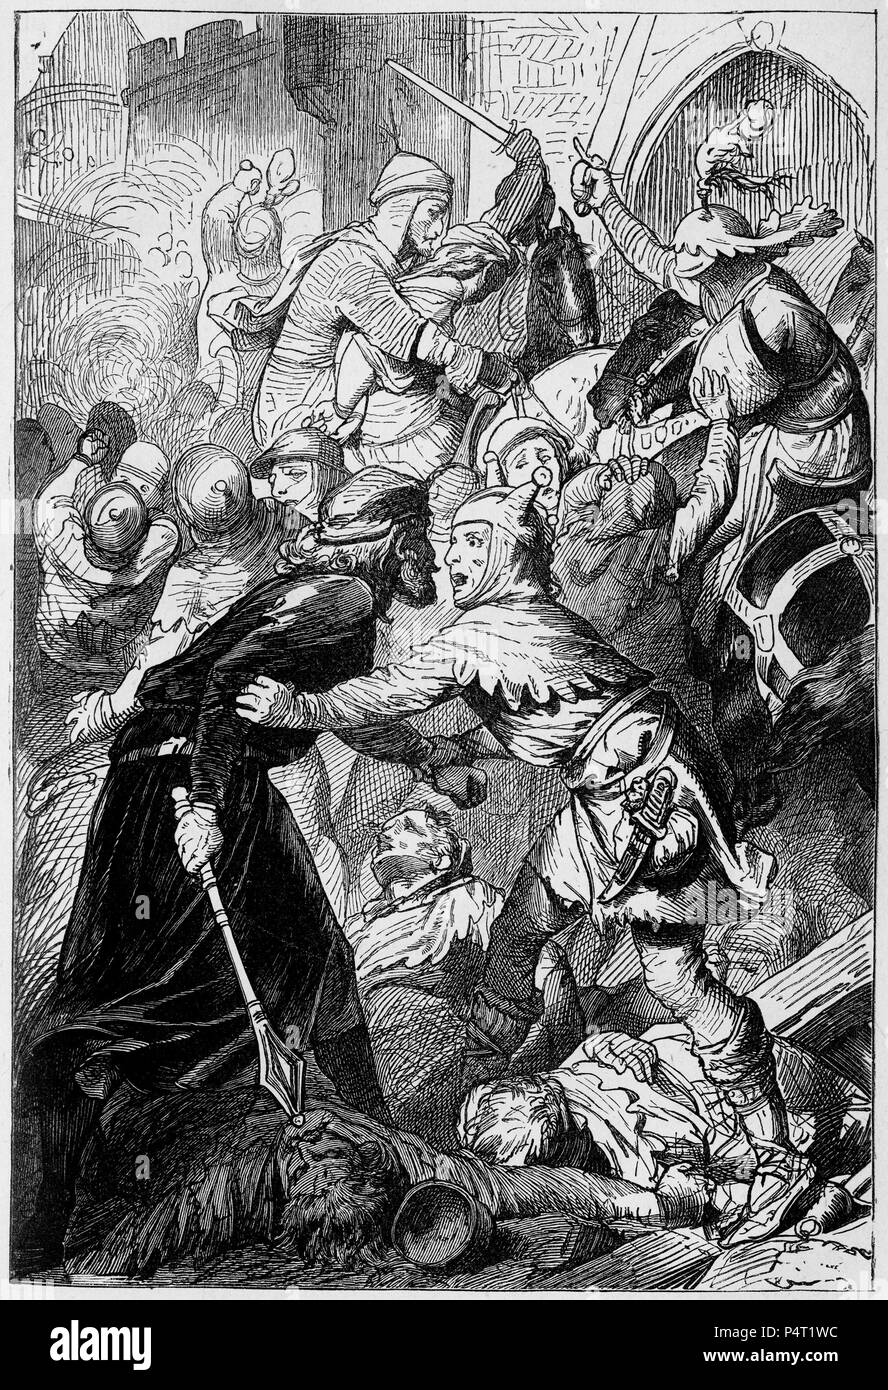 Incisione di soldati in una battaglia medievale di scena. Da una copia illustrata di Ivanhoe, 1878. Foto Stock